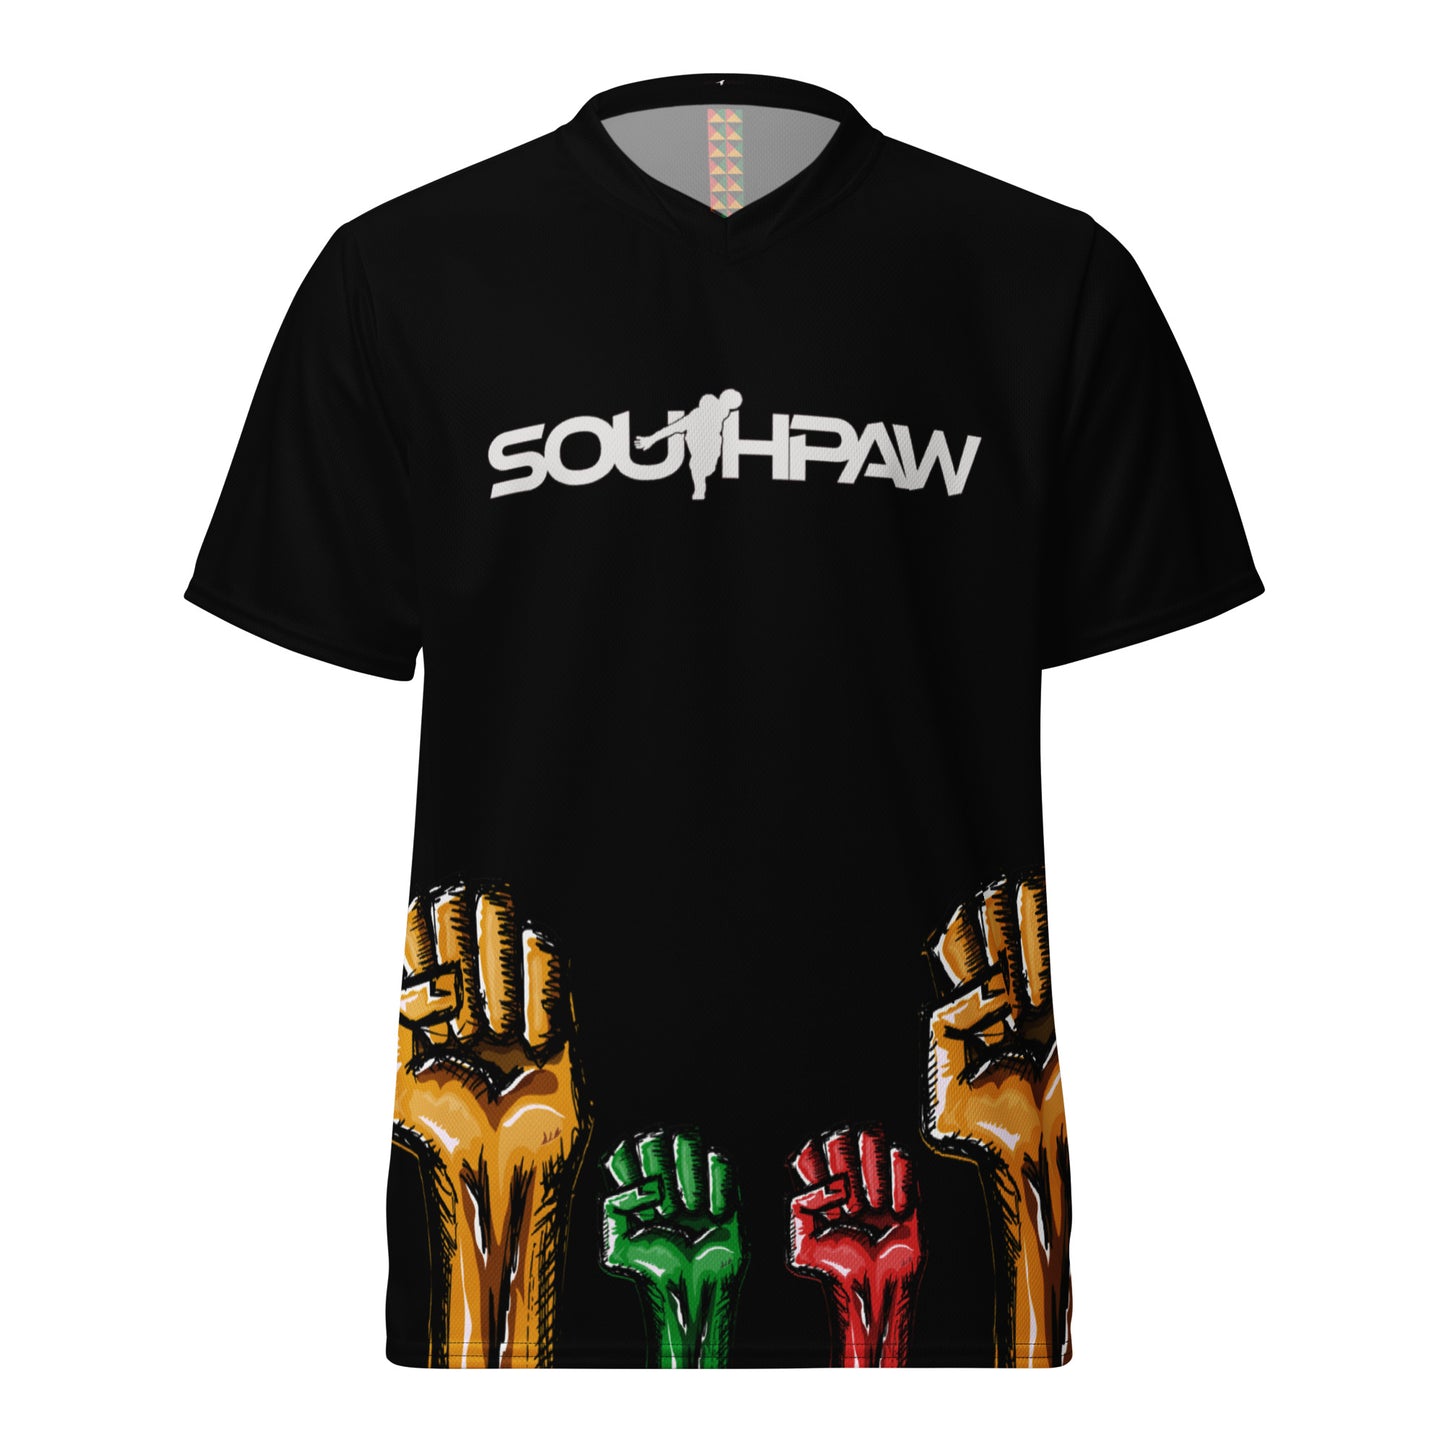 SouthPaw Bowling Jersey - Fists (Black)